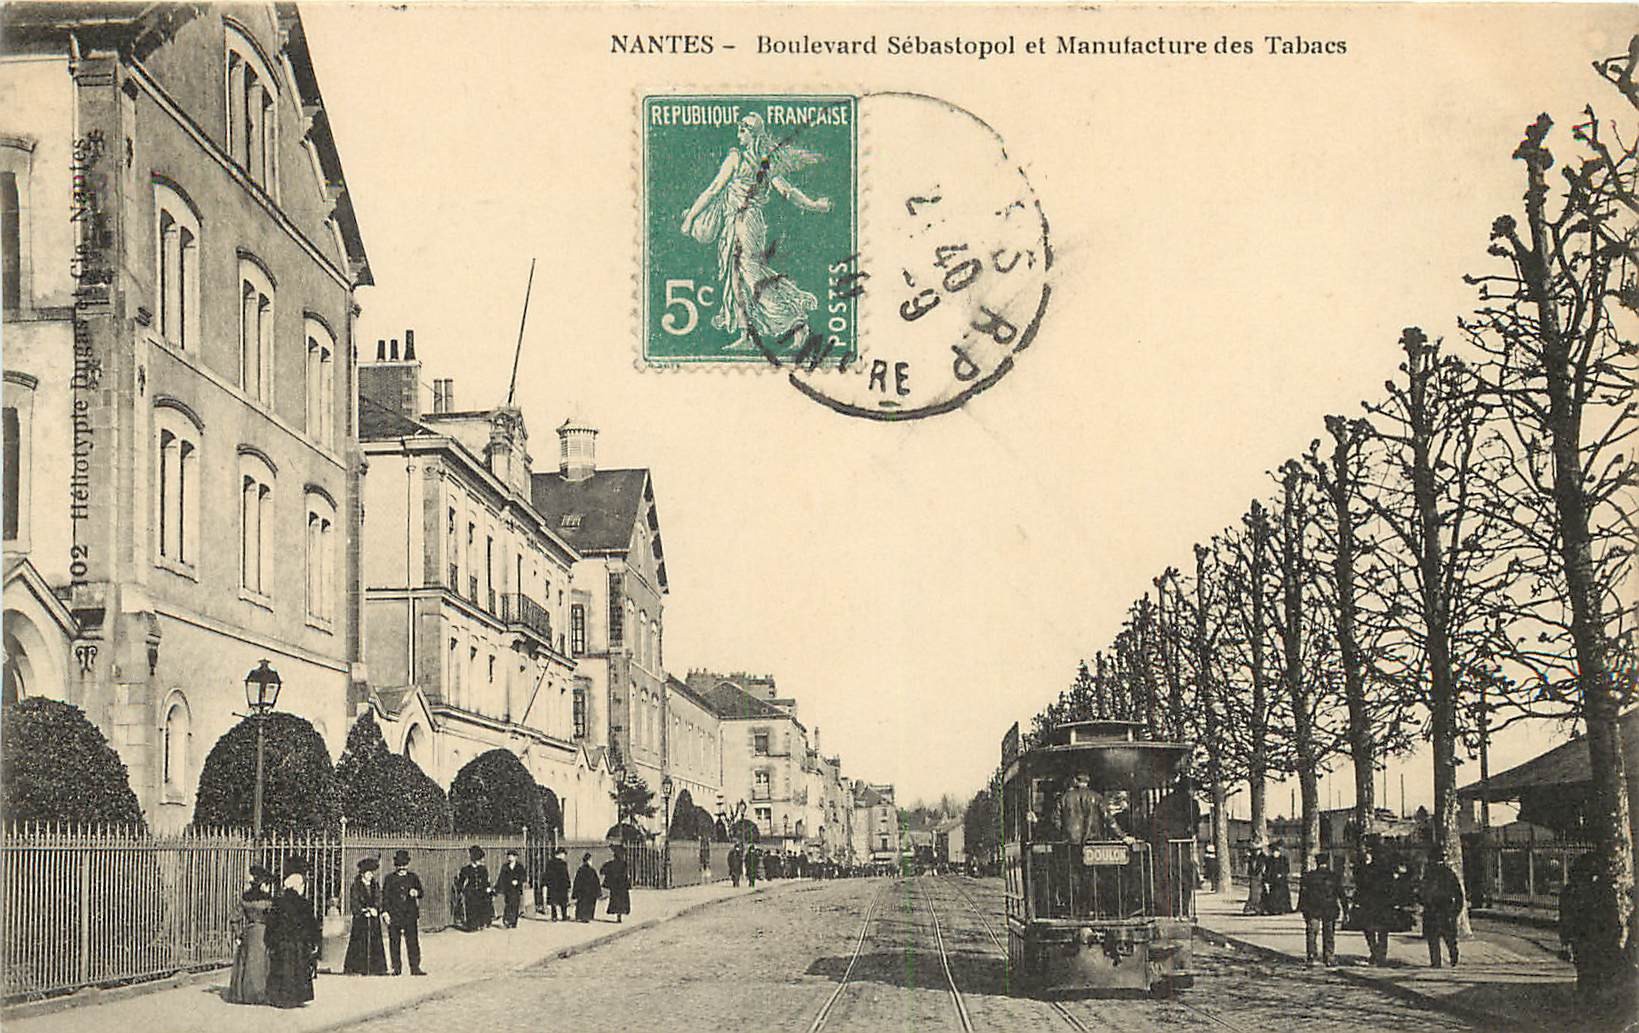 44 NANTES. Manufacture des Tabacs boulevard Sébastopol 1910